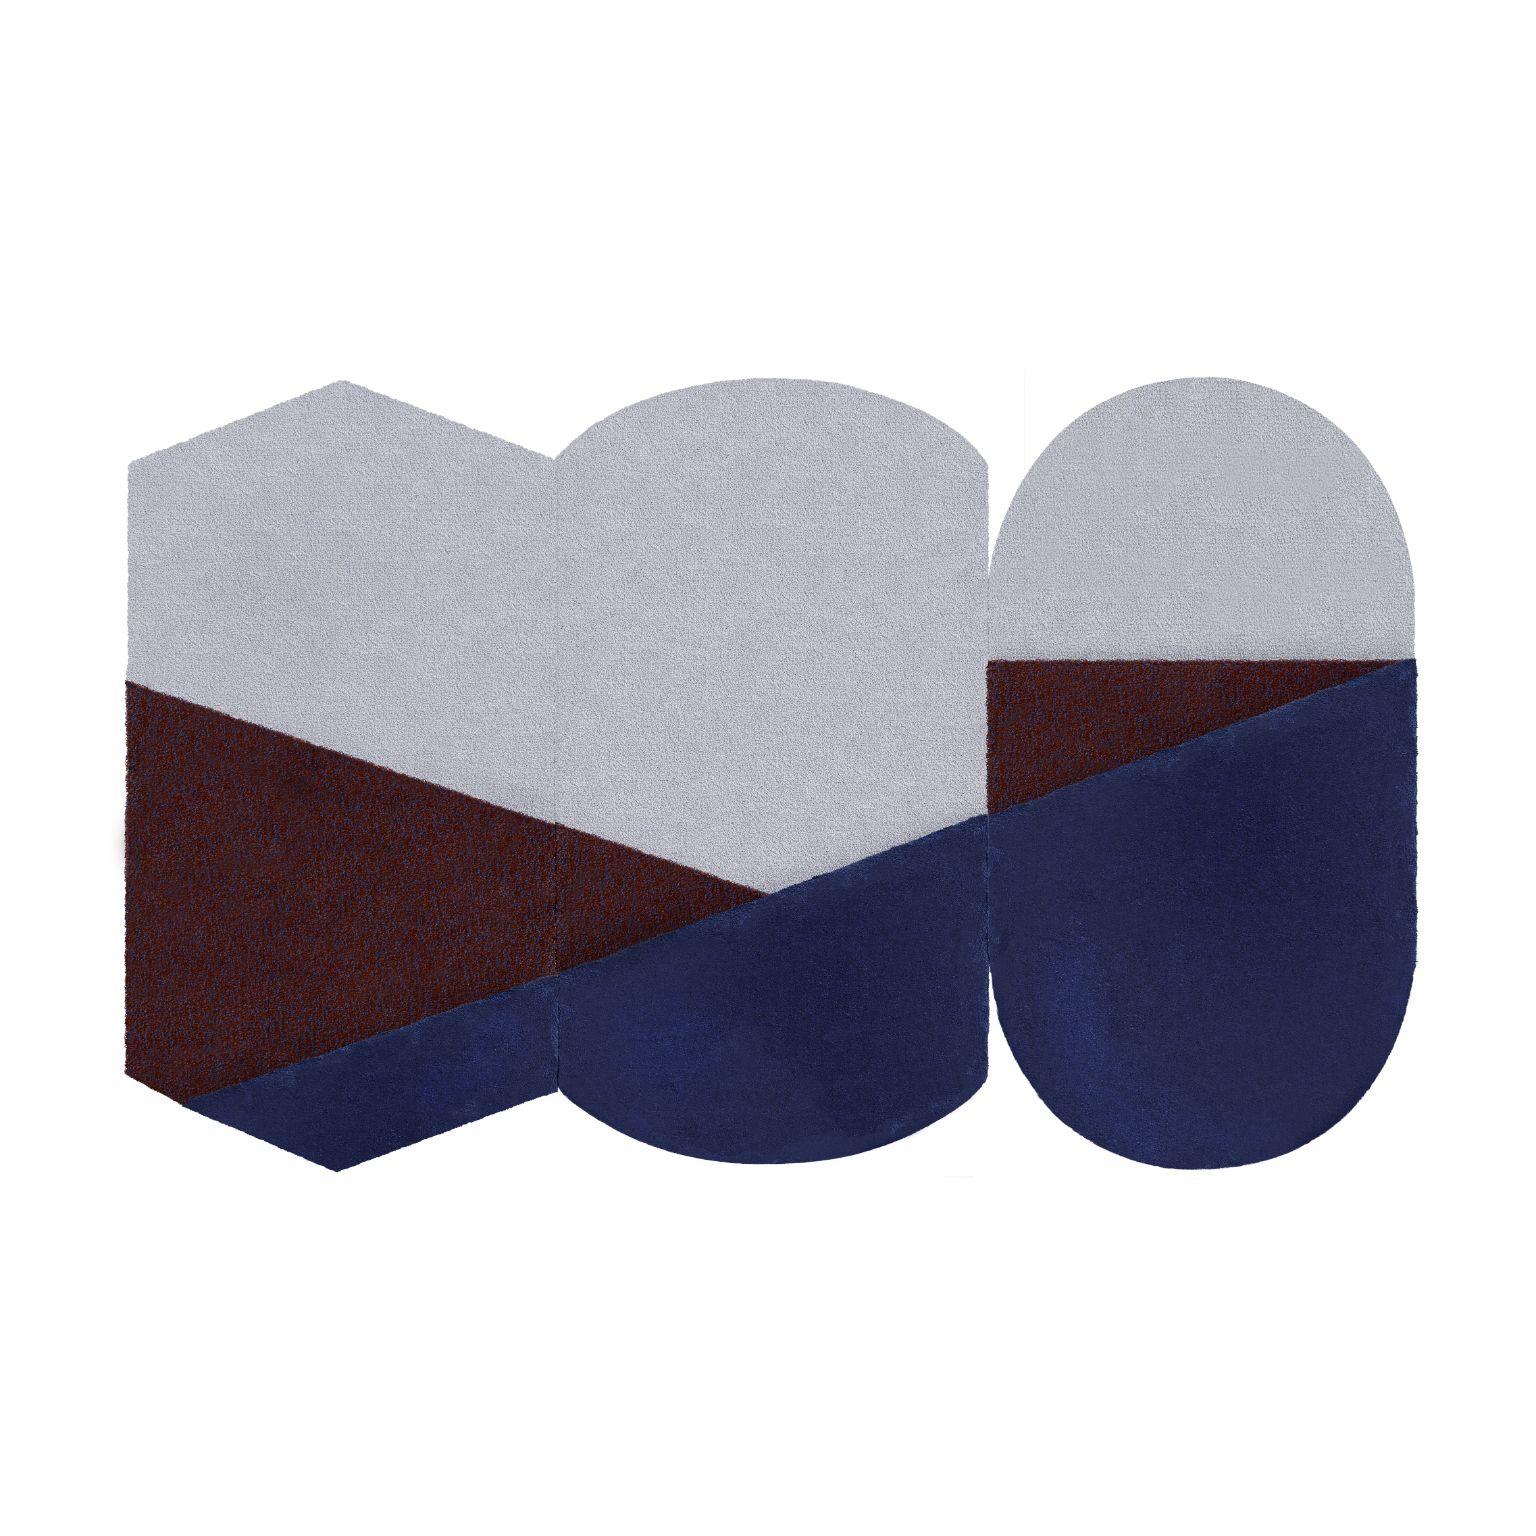 Medium Blue Oci Triptychon teppich von Seraina Lareida
Abmessungen: 330 x 200 cm
MATERIALIEN: 100% neuseeländische Wolle bester Qualität.
Erhältlich in den Größen Small und Large. Auch in folgenden Farben erhältlich: Brick/Pink, Gelb/Grau,